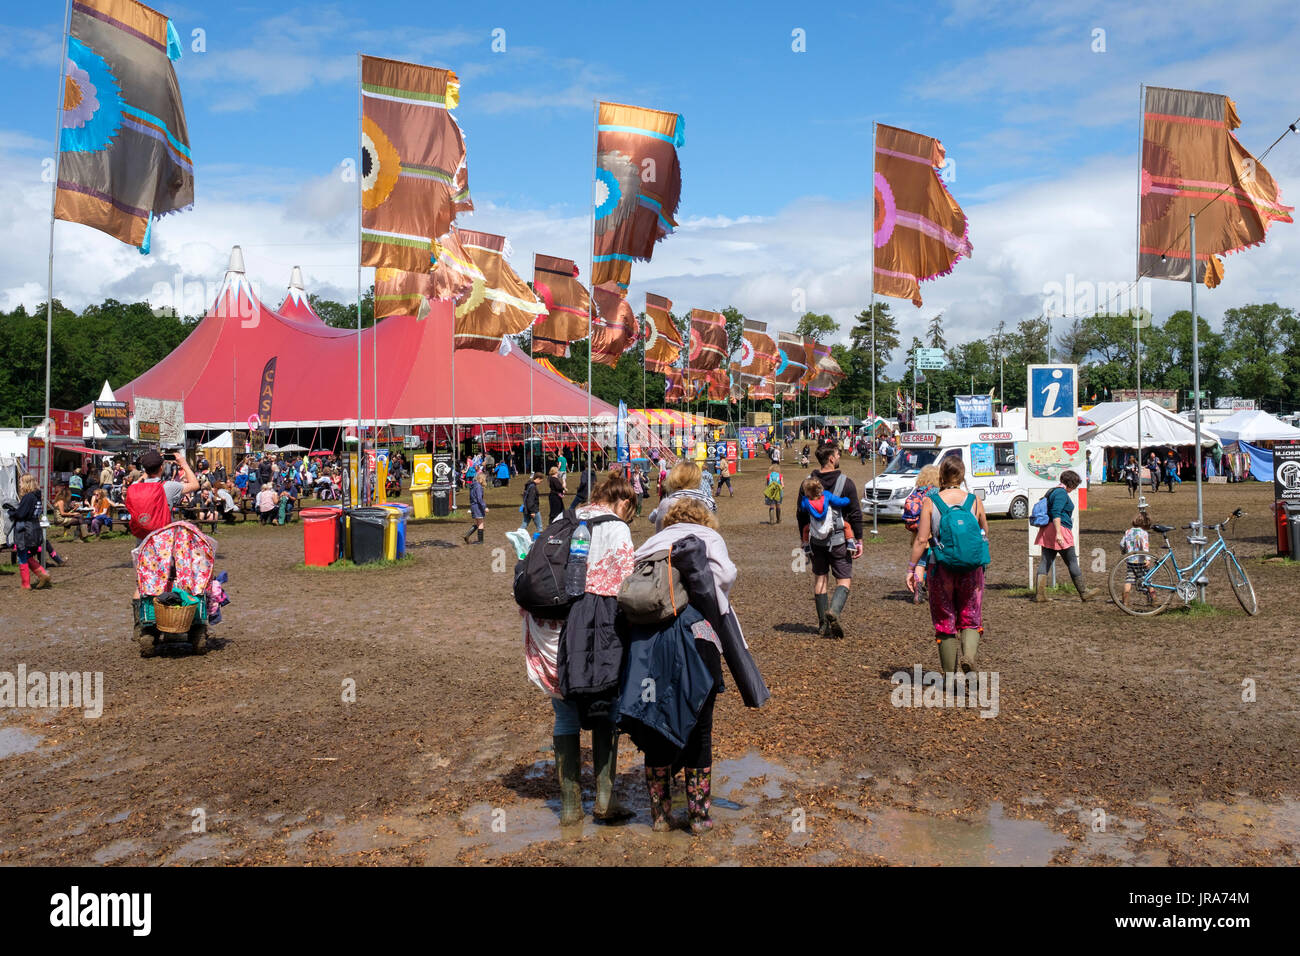 Scène de foule et la grande tente rouge, Festival WOMAD, Charlton Park, Malmesbury, Wiltshire, Angleterre, Juillet 30, 2017 Banque D'Images